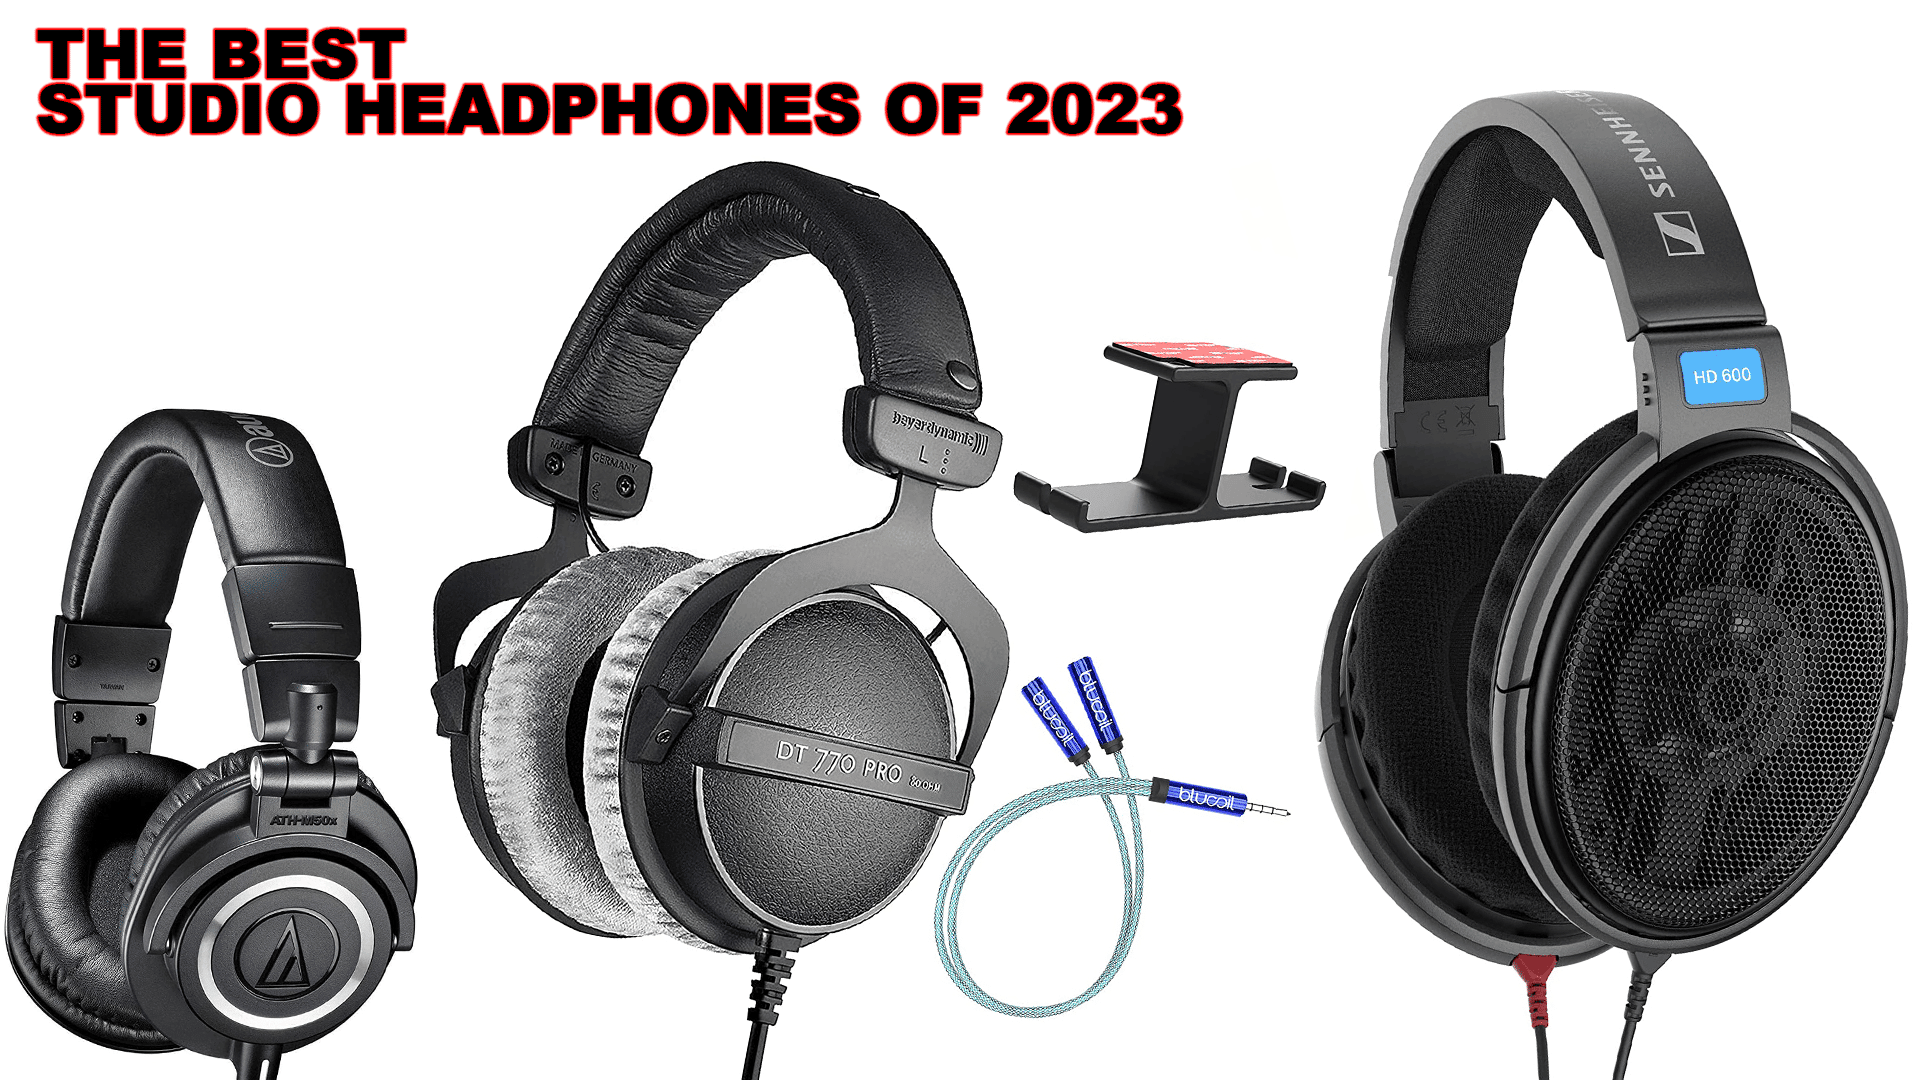 The Best Studio Headphones of 2023